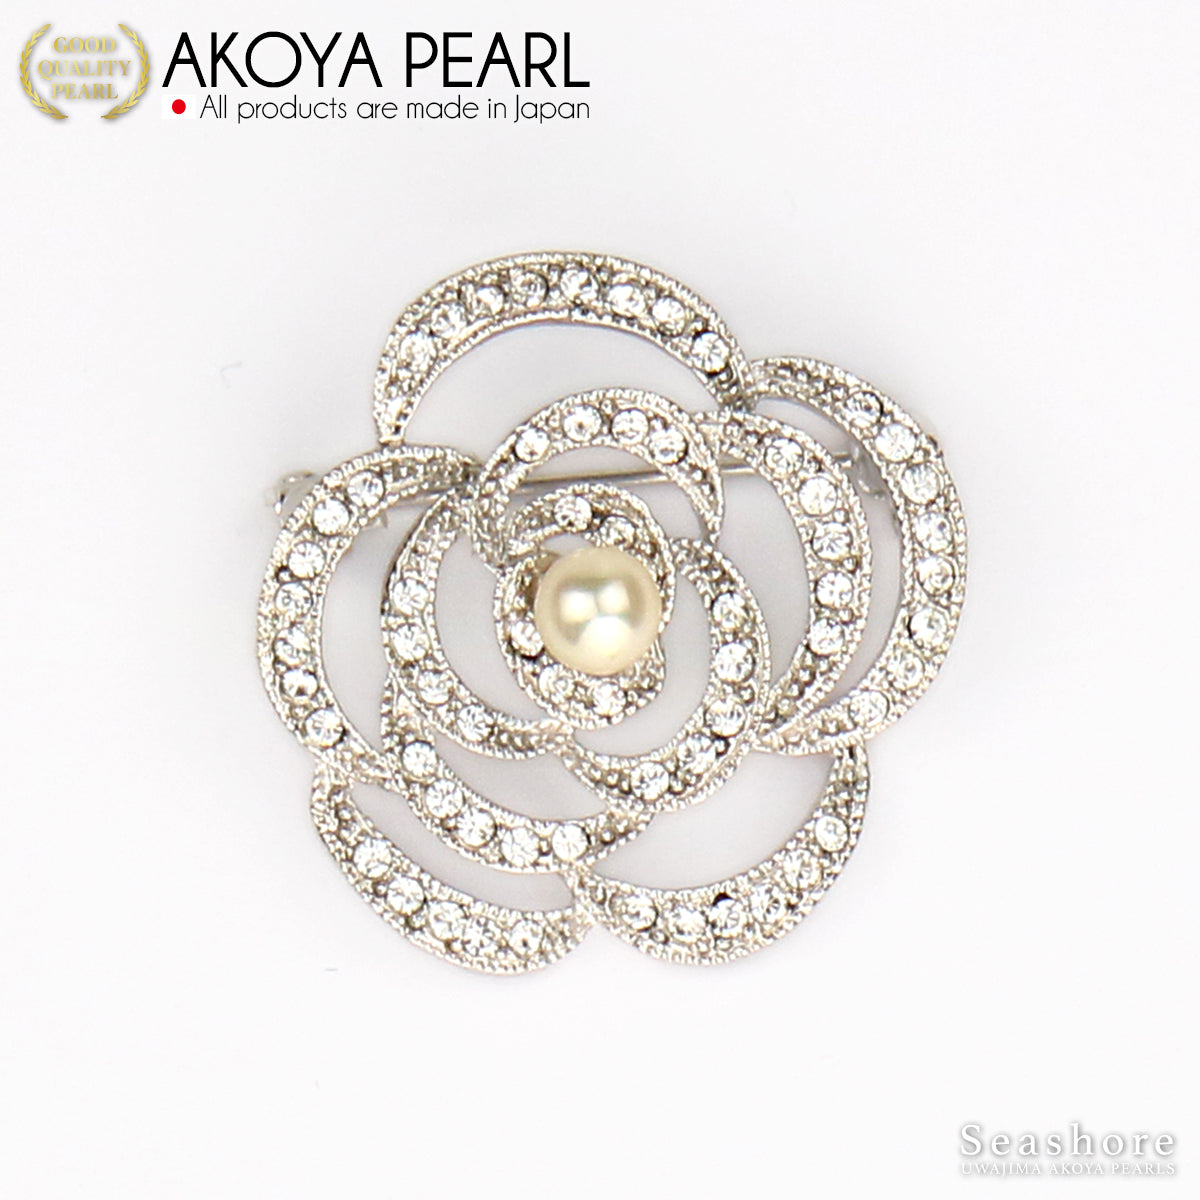 珍珠胸针设计花黄铜白色 5.0-6.5 毫米 Akoya 珍珠带储物盒 (3924)